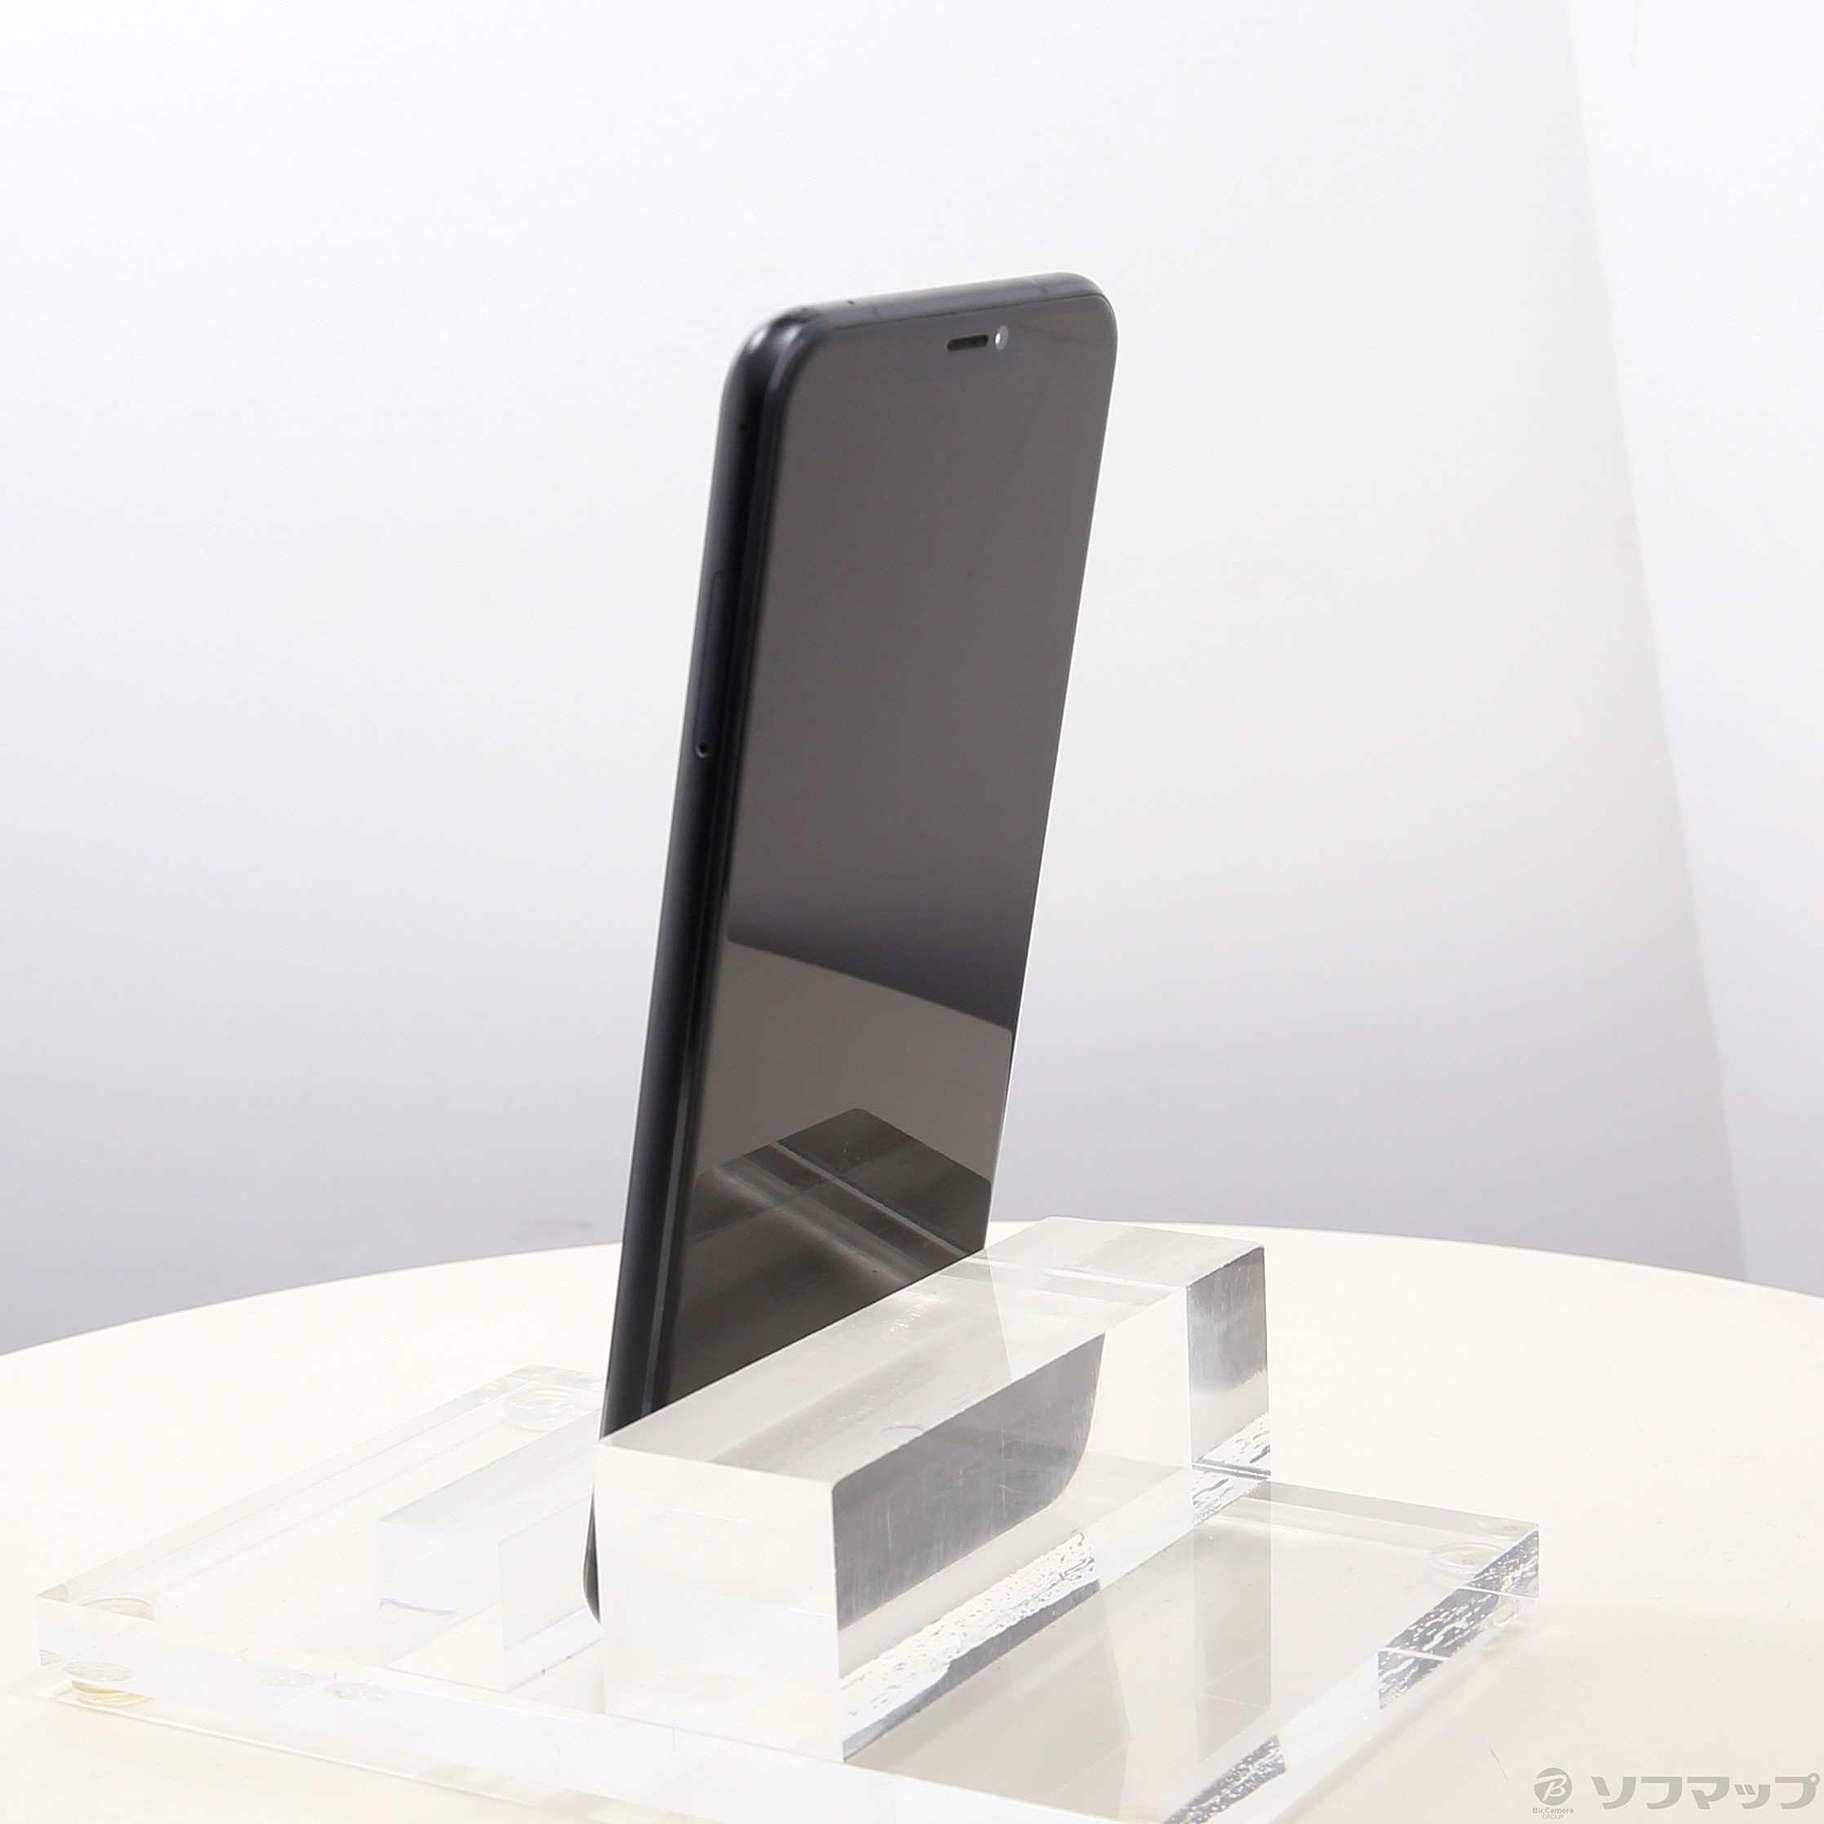 スマートフォン本体ZenFone 5 シャイニーブラック 64 GB SIMフリー - www.intrinsicwellnessclinic.com